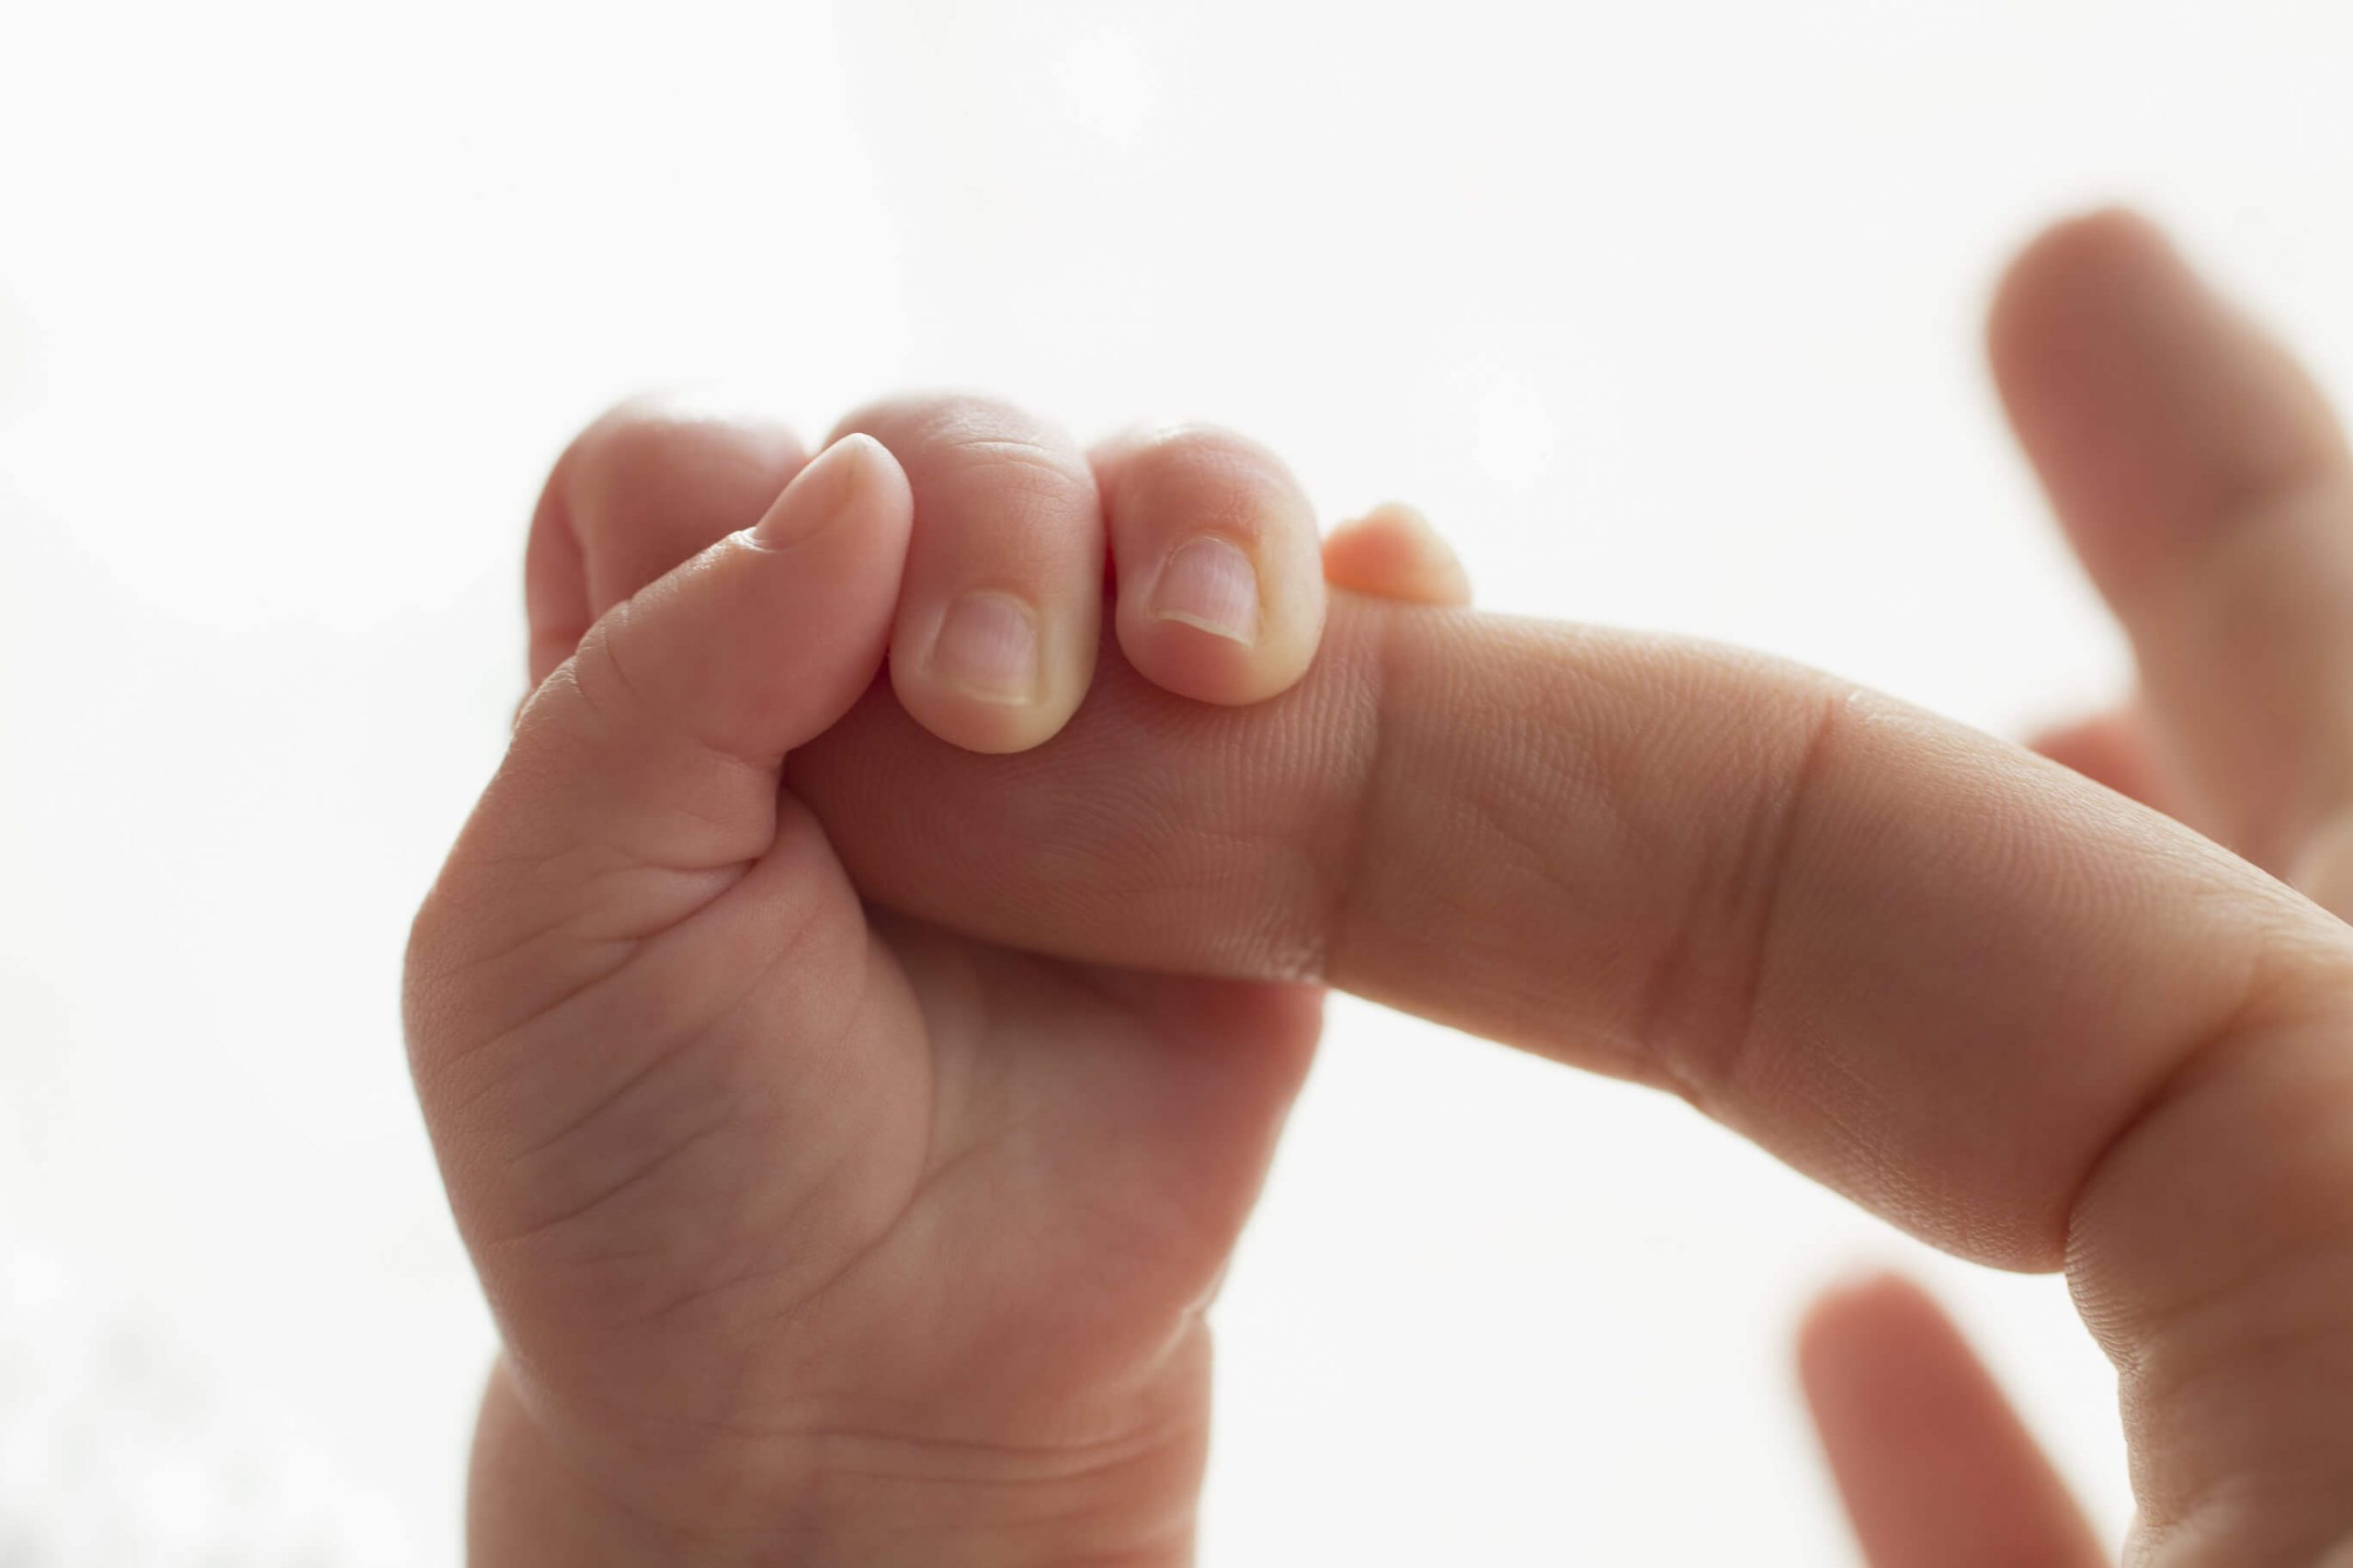 bayi menggenggam jari ibu